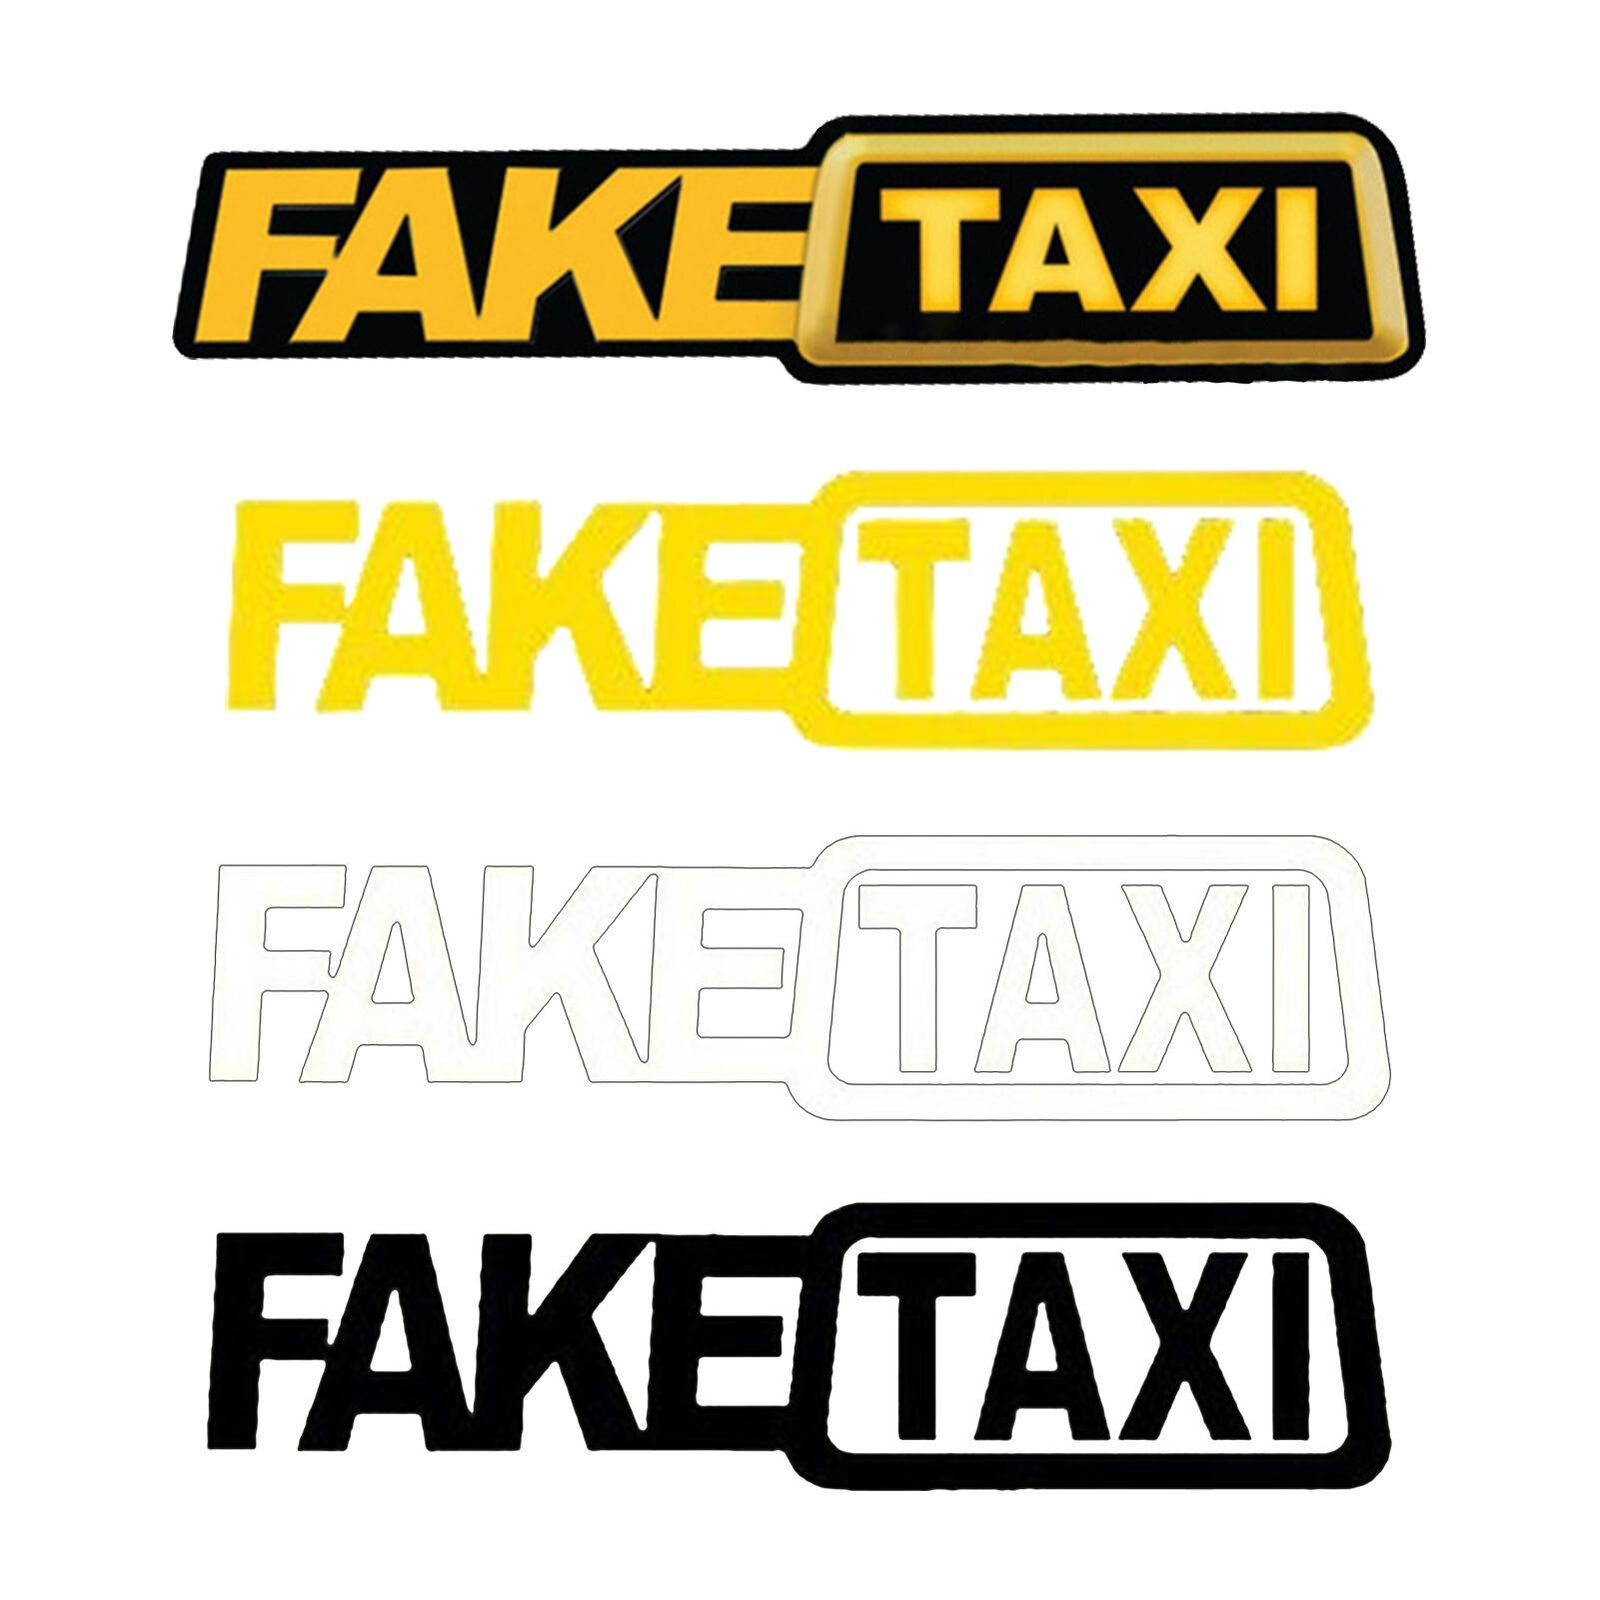 consuelo vargas add photo fake taxi logo